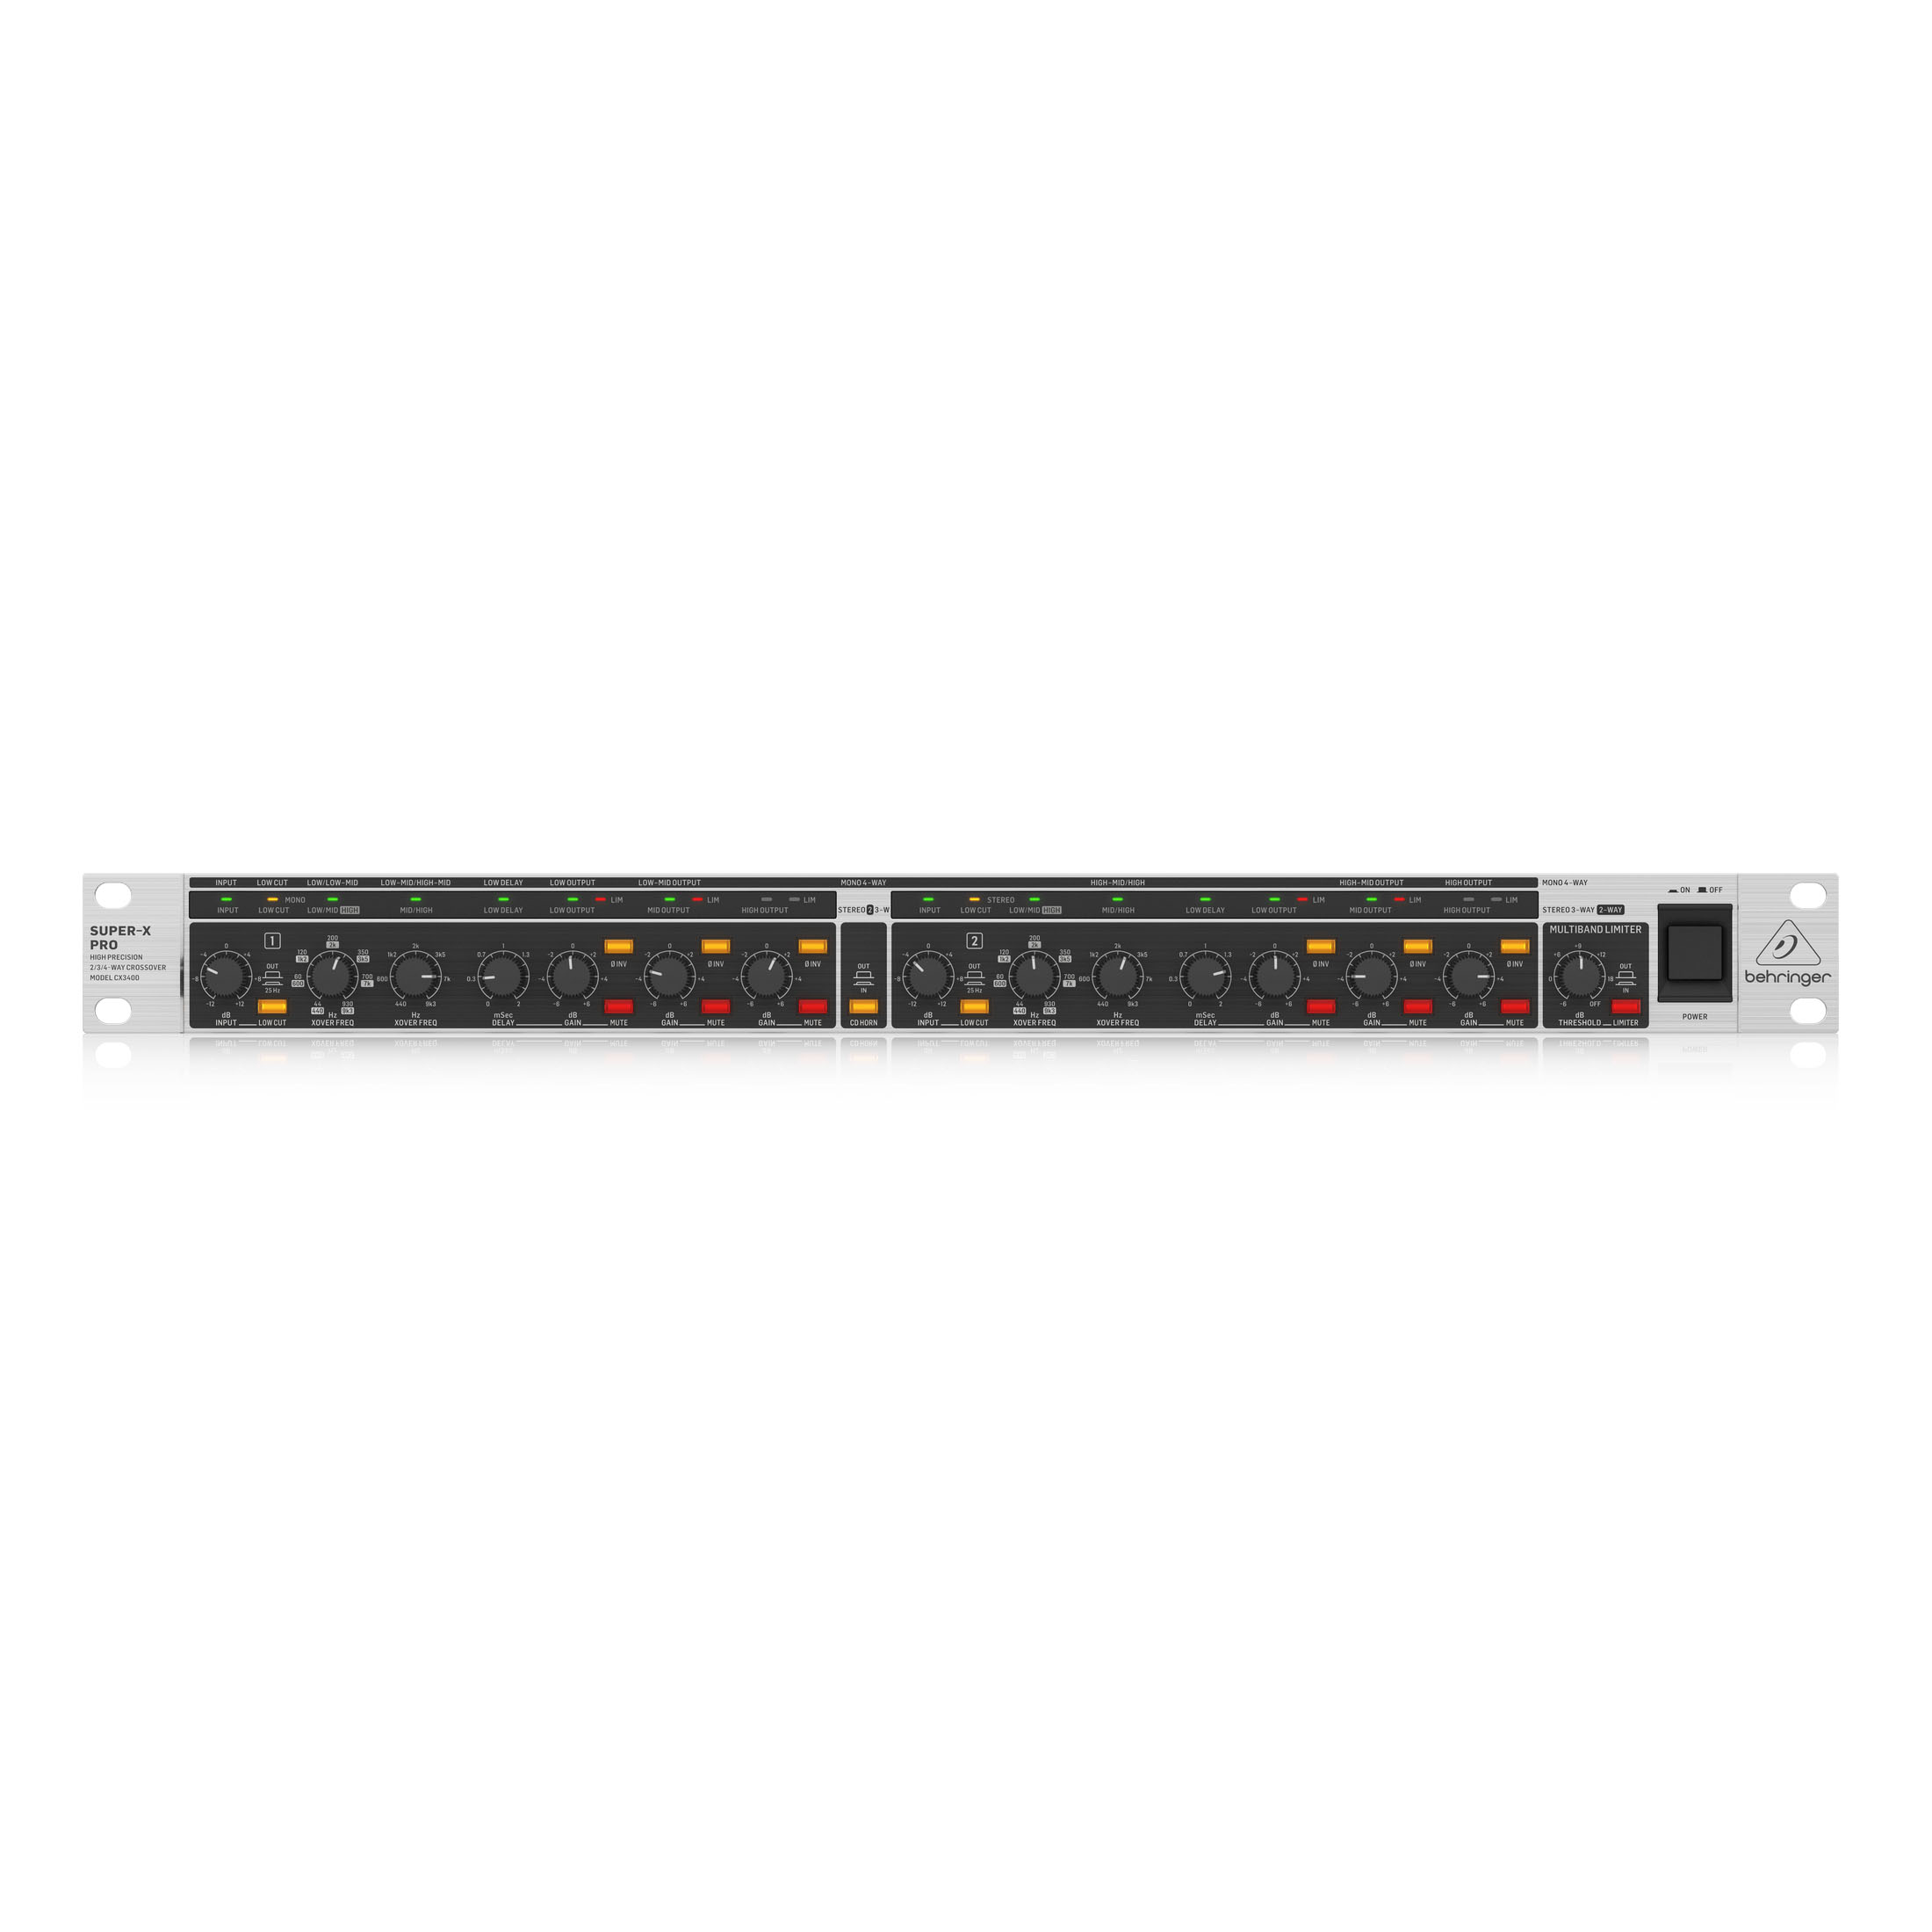 BEHRINGER [CX3400 V2] ステレオクロスオーバー / チャンネルデバイダー